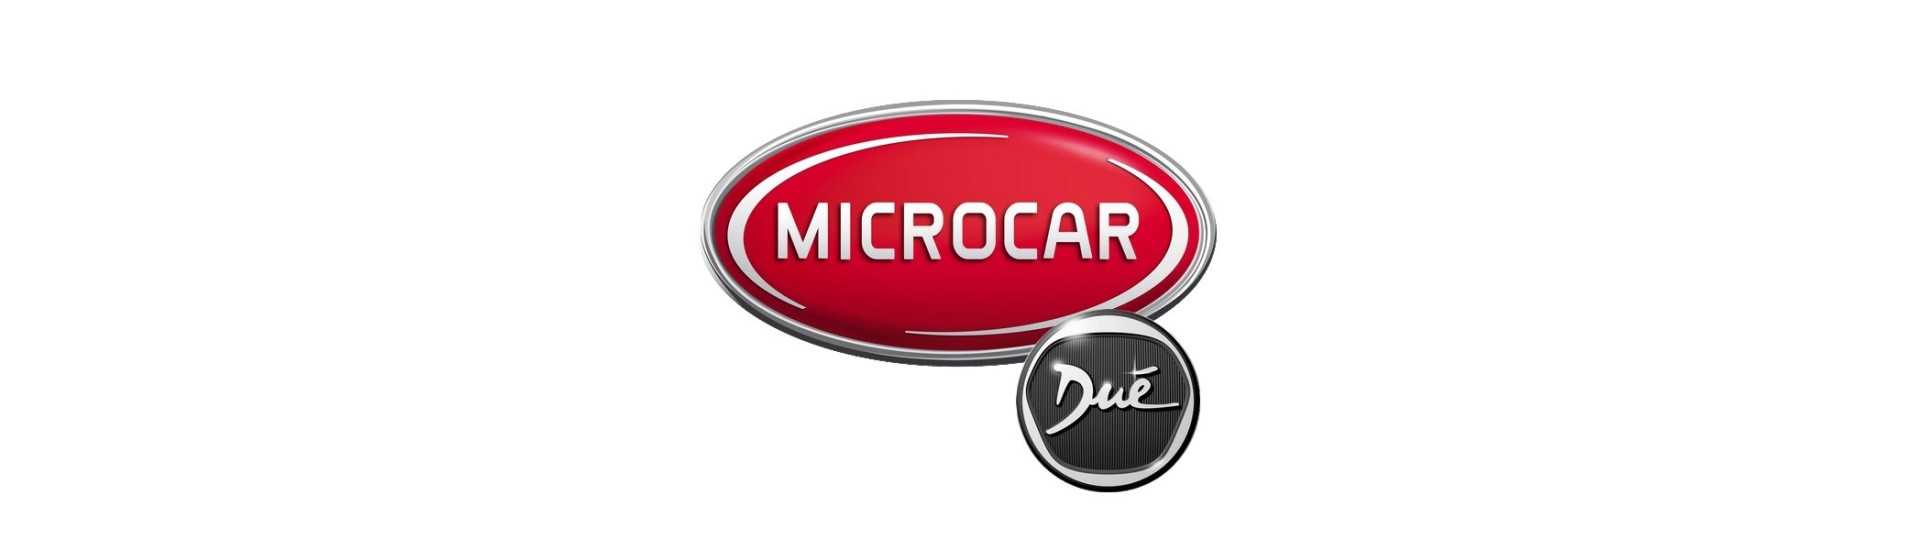 Metallstöd till bästa pris för bil utan tillstånd Microcar Dué